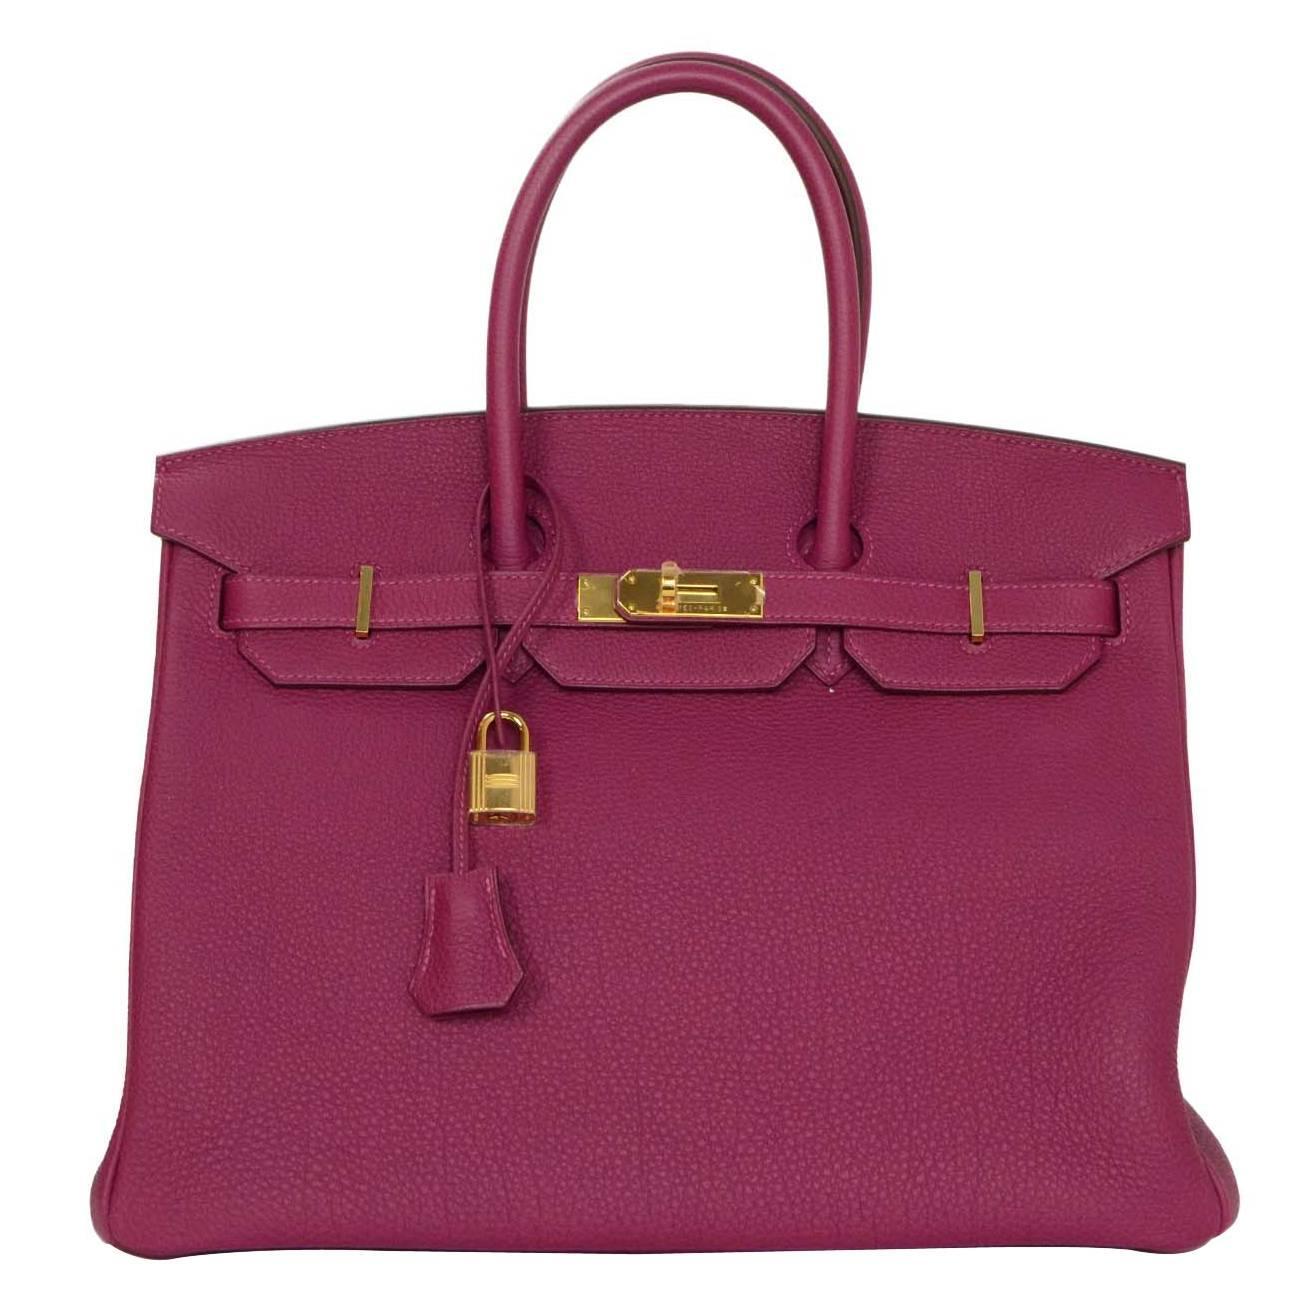 Hermes LIKE NEW Violet Tosca Togo Leather 35cm Birkin Bag w/ Box For Sale at 1stdibs